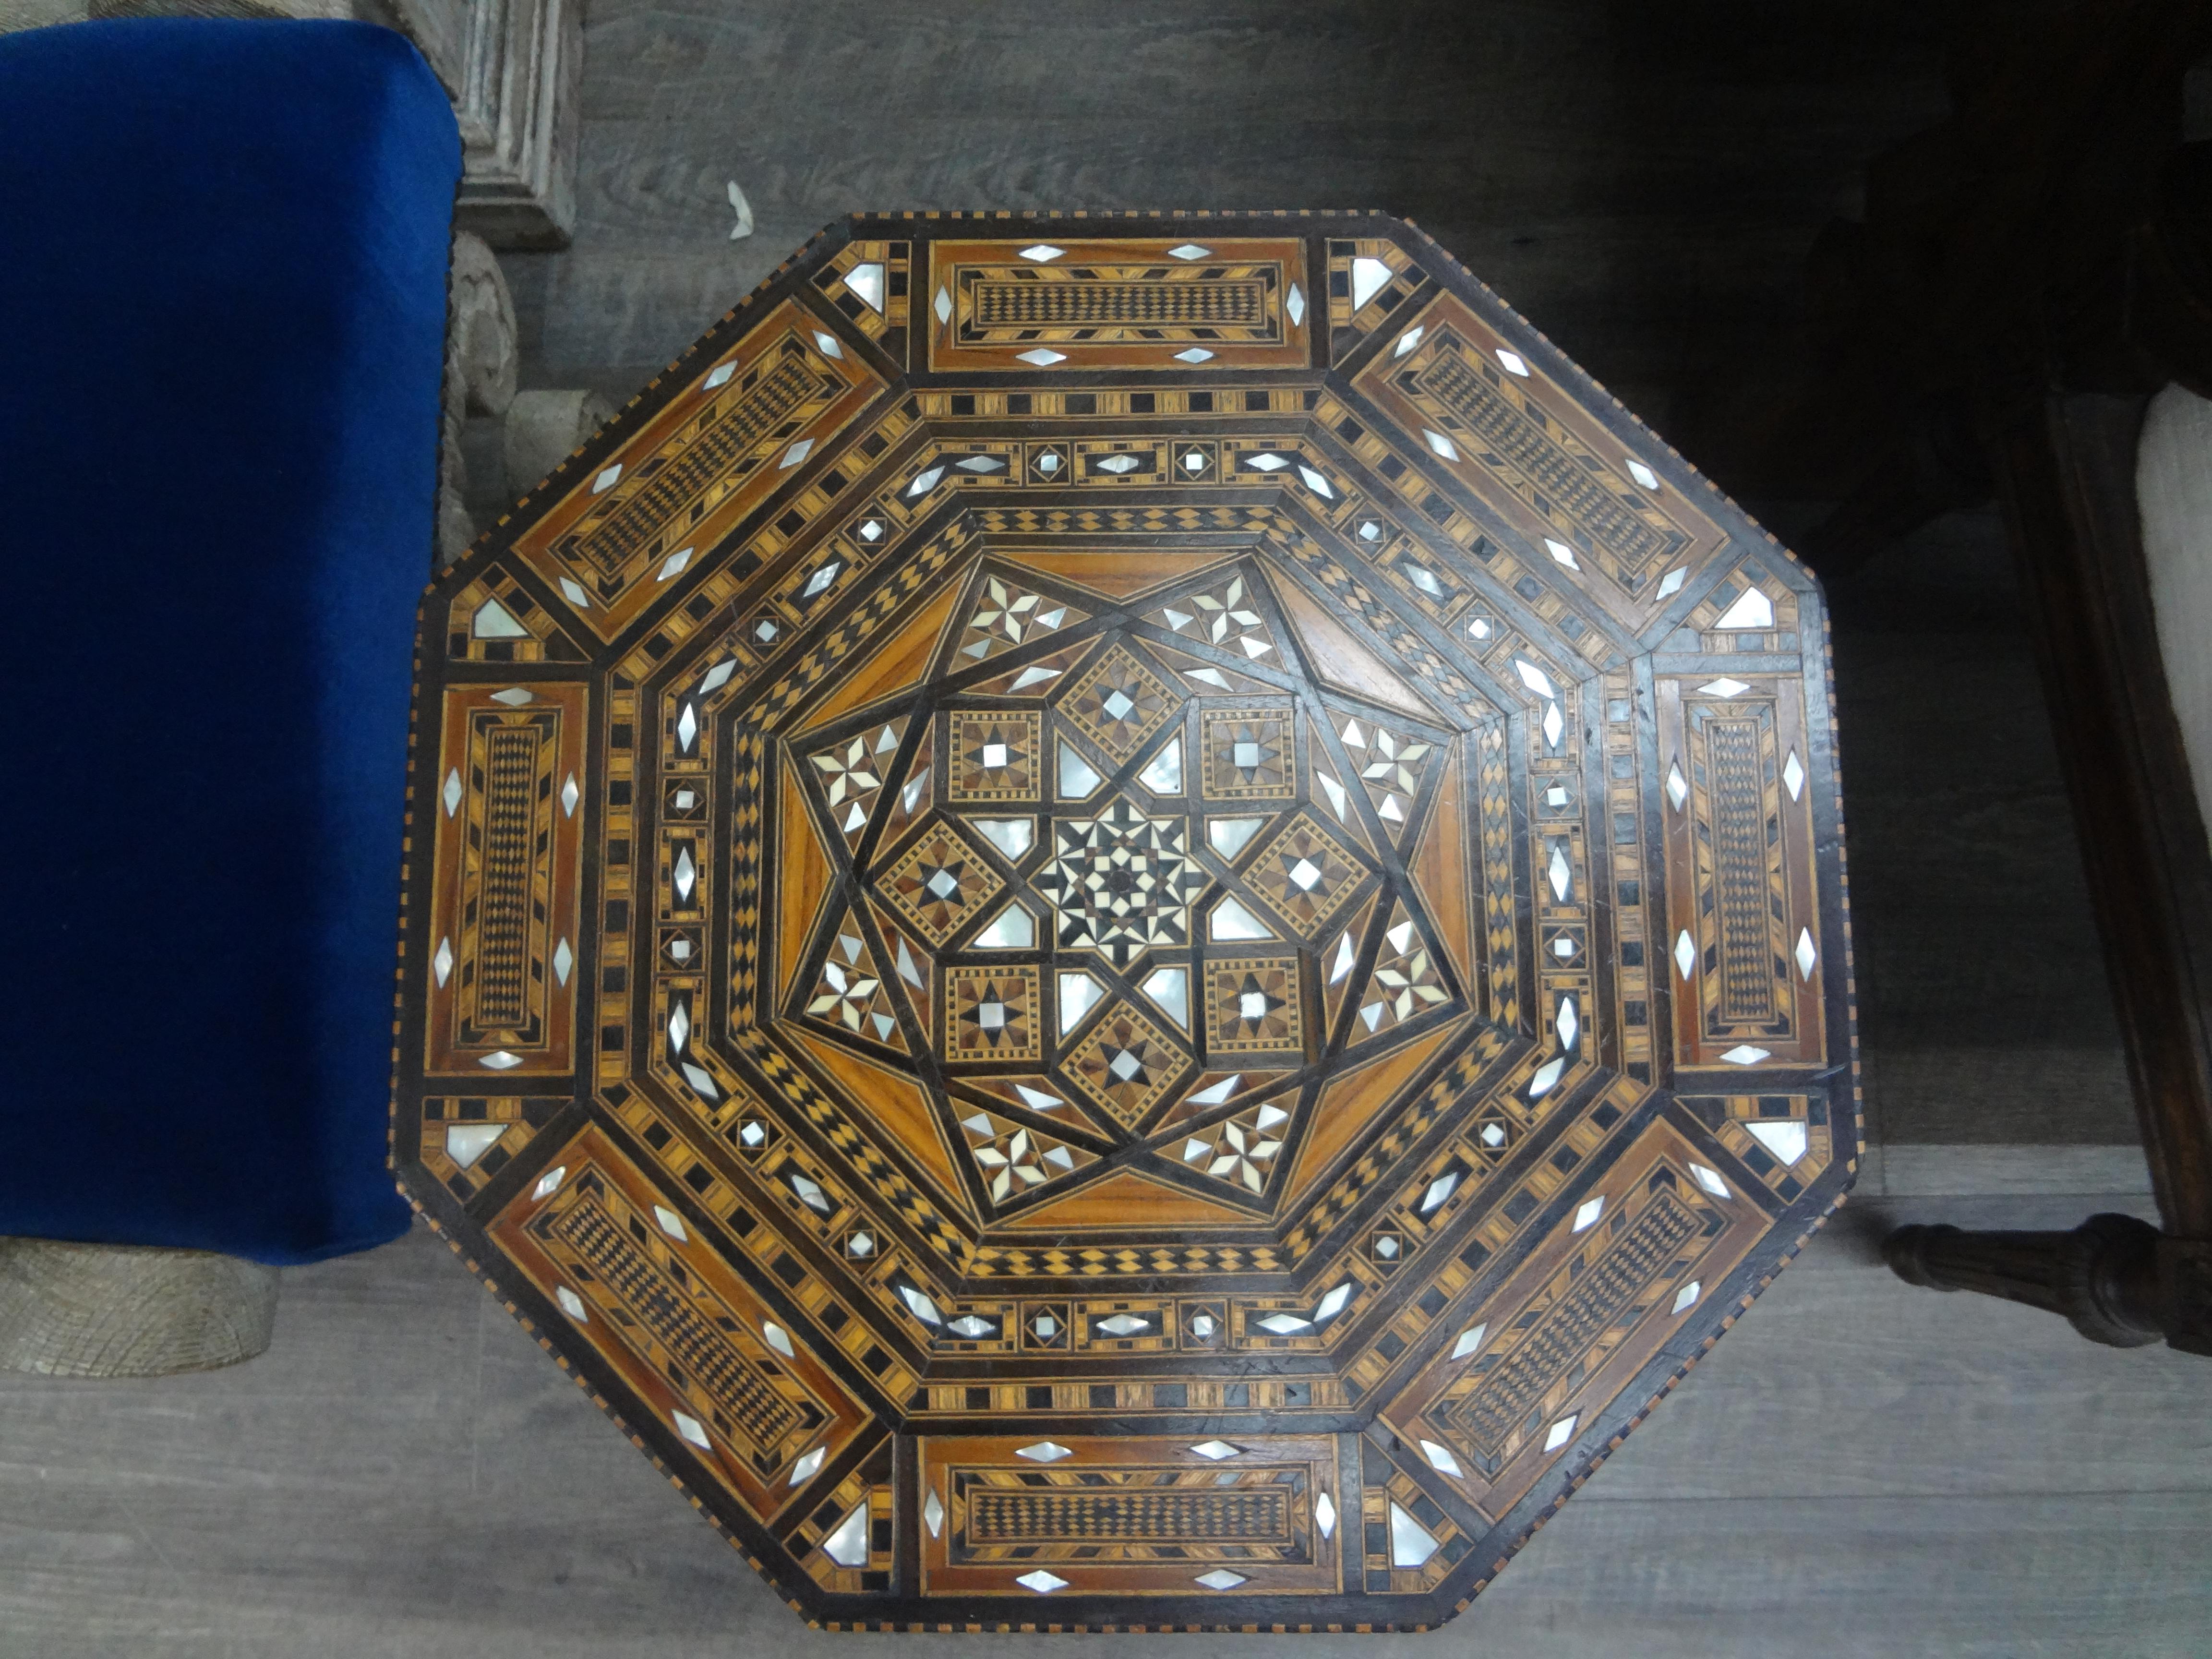 Vintage Middle Eastern Arabesque Stil Intarsien achteckigen Tisch.
Dieser hübsche achteckige Tisch im orientalischen oder islamischen Arabesken-Stil ist mit Intarsien aus verschiedenen Hölzern in einem geometrischen Muster mit Perlmutt-Akzenten